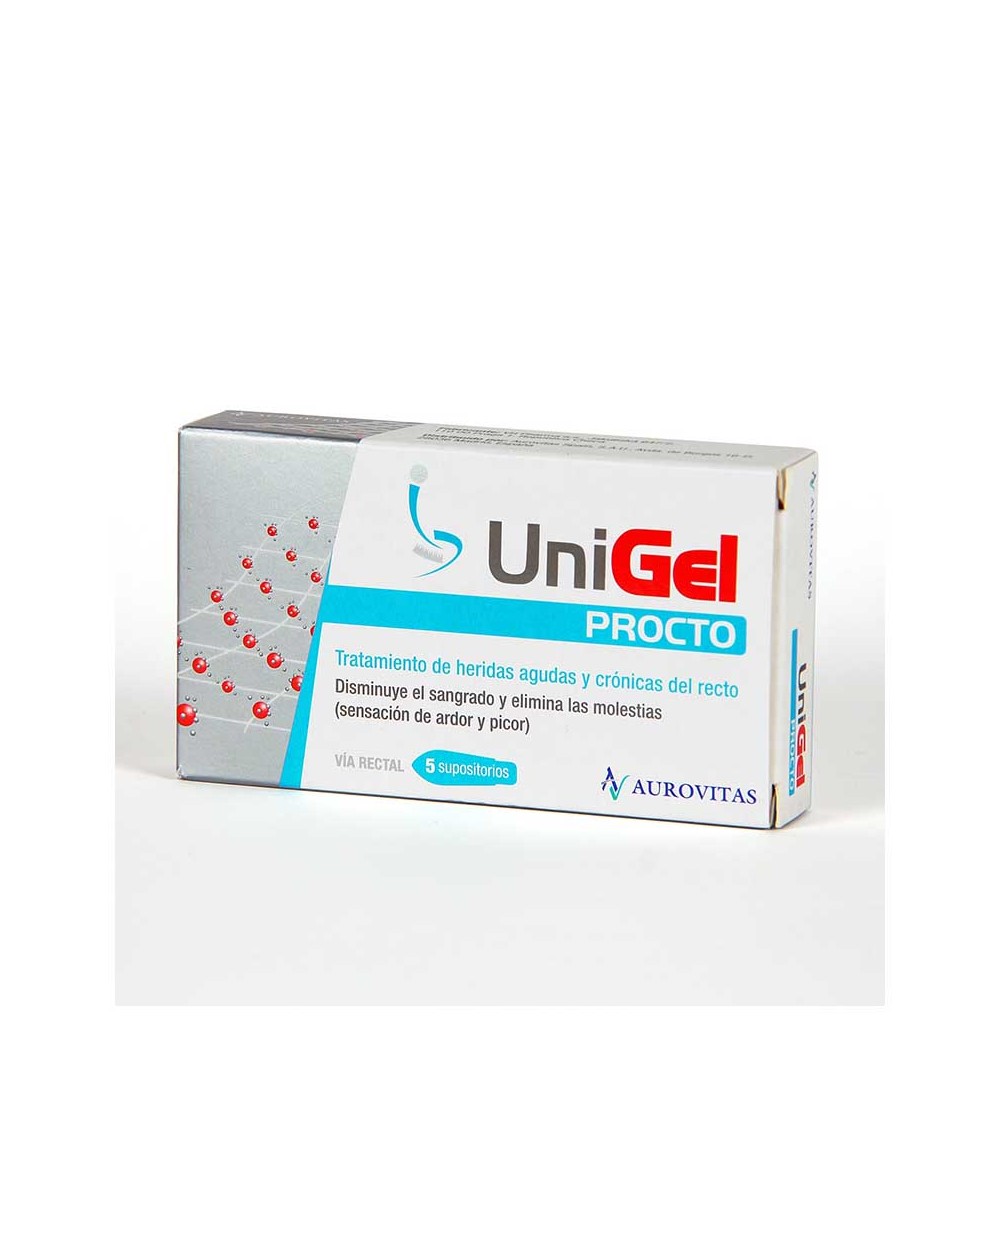 UniGel Procto supositorios para curar fisuras anales – 5 supositorios